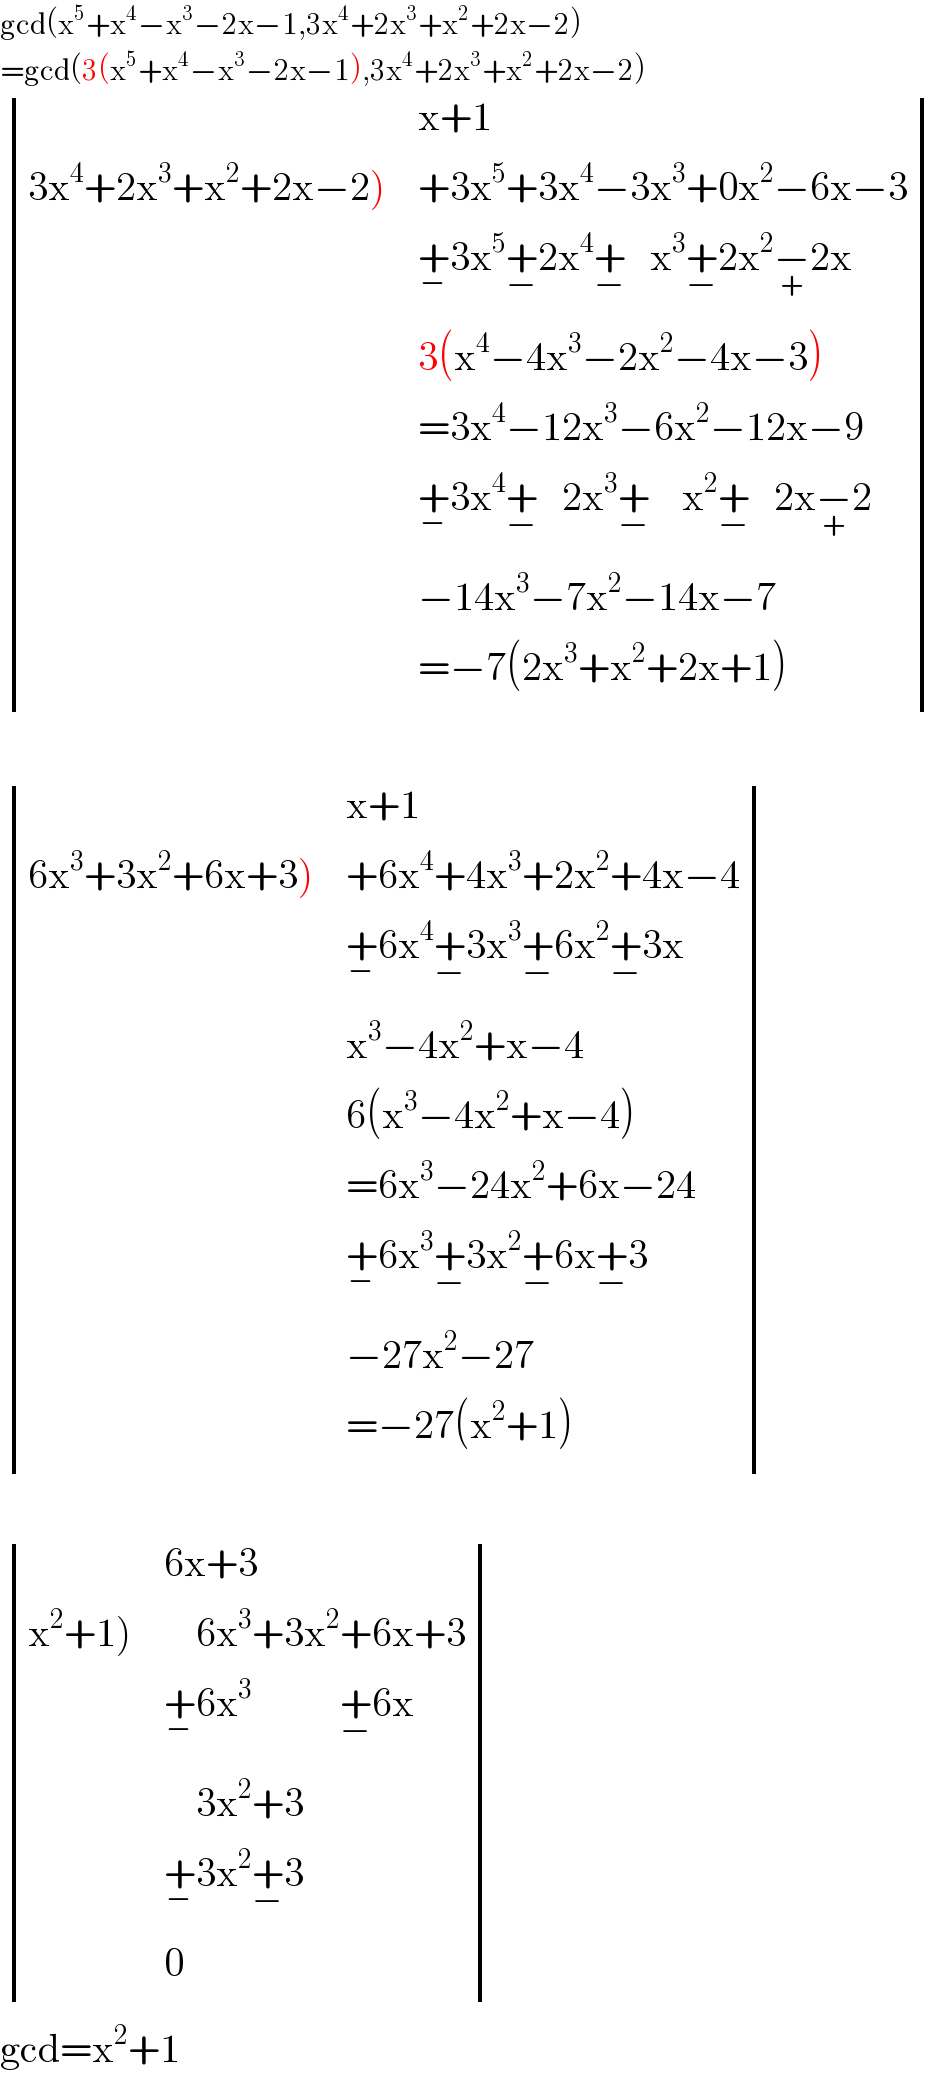 gcd(x^5 +x^4 −x^3 −2x−1,3x^4 +2x^3 +x^2 +2x−2)  =gcd(3(x^5 +x^4 −x^3 −2x−1),3x^4 +2x^3 +x^2 +2x−2)   determinant ((,(x+1)),((3x^4 +2x^3 +x^2 +2x−2)),(+3x^5 +3x^4 −3x^3 +0x^2 −6x−3)),(,(+_− 3x^5 +_(−) 2x^4 +_(−)    x^3 +_(−) 2x^2 −_(+) 2x)),(,(3(x^4 −4x^3 −2x^2 −4x−3))),(,(=3x^4 −12x^3 −6x^2 −12x−9)),(,(+_− 3x^4 +_(−)    2x^3 +_(−)     x^2 +_(−)    2x−_(+) 2)),(,(−14x^3 −7x^2 −14x−7)),(,(=−7(2x^3 +x^2 +2x+1))))     determinant ((,(x+1)),((6x^3 +3x^2 +6x+3)),(+6x^4 +4x^3 +2x^2 +4x−4)),(,(+_− 6x^4 +_(−) 3x^3 +_(−) 6x^2 +_(−) 3x)),(,(x^3 −4x^2 +x−4)),(,(6(x^3 −4x^2 +x−4))),(,(=6x^3 −24x^2 +6x−24)),(,(+_− 6x^3 +_(−) 3x^2 +_(−) 6x+_(−) 3)),(,(−27x^2 −27)),(,(=−27(x^2 +1))))     determinant ((,(6x+3)),((x^2 +1)),(    6x^3 +3x^2 +6x+3)),(,(+_− 6x^3            +_(−) 6x)),(,(    3x^2 +3)),(,(+_− 3x^2 +_(−) 3)),(,0))  gcd=x^2 +1  